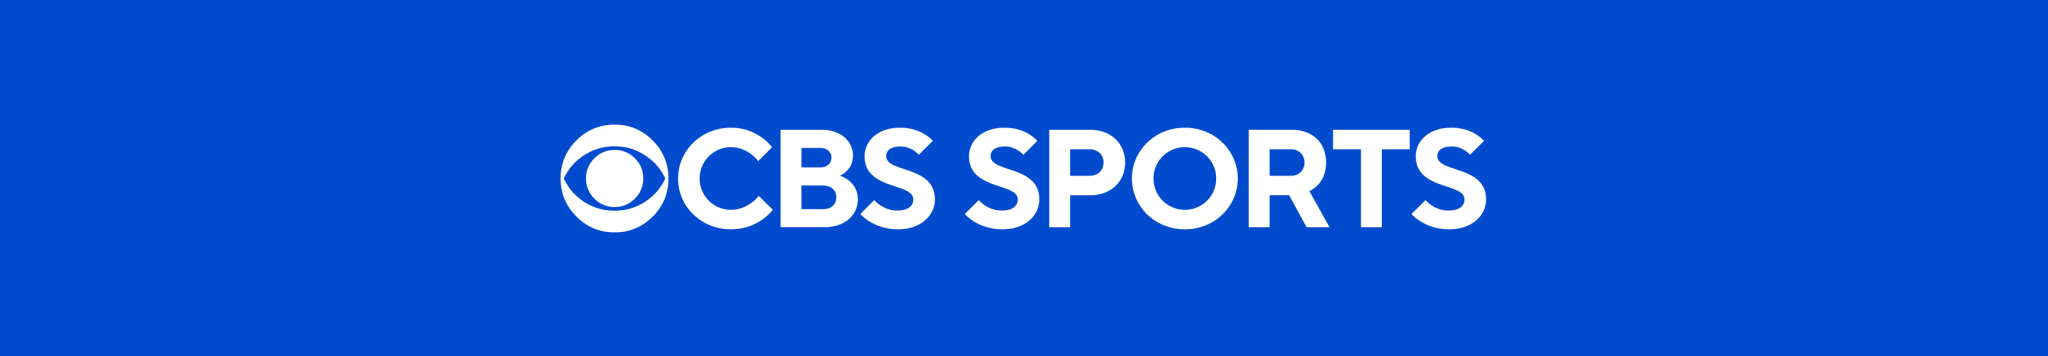 CBS Sports Mantas